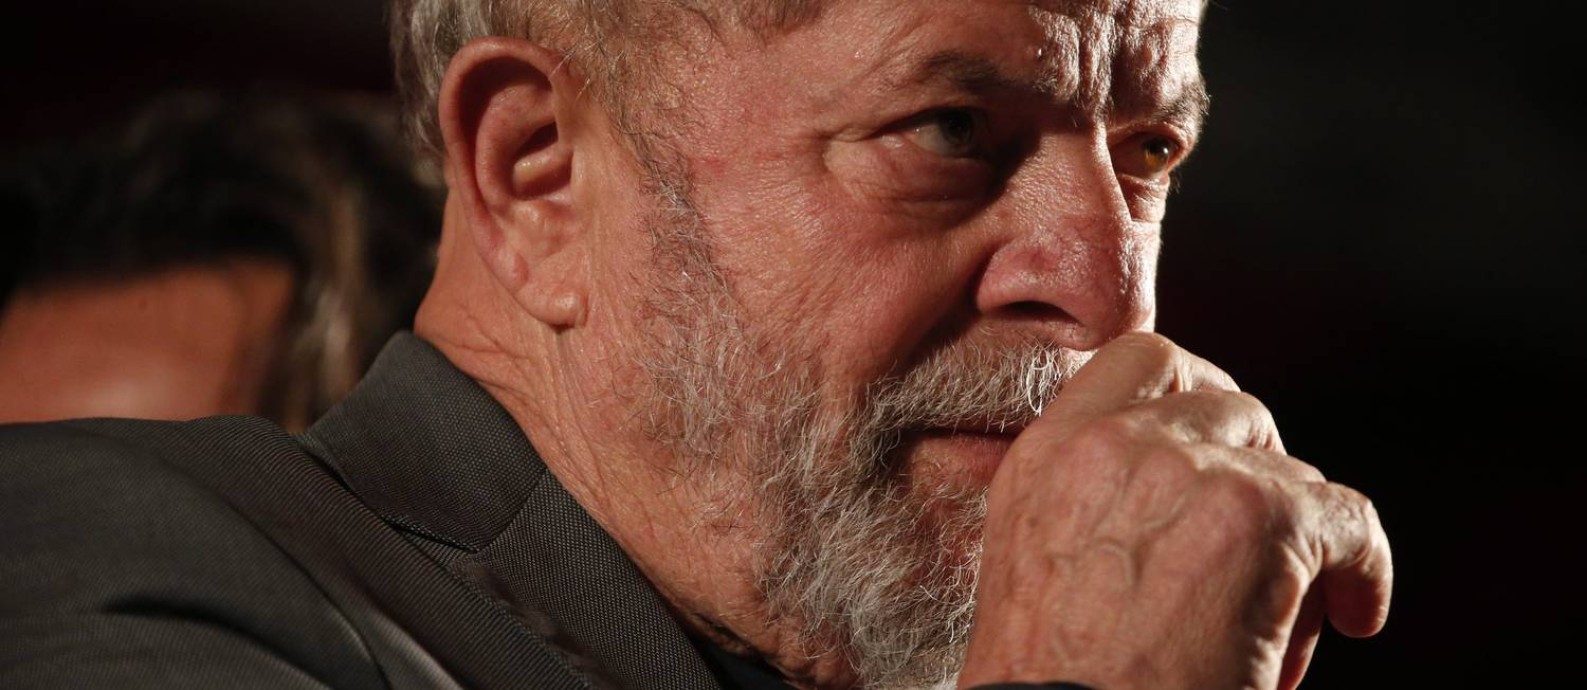 O ex-presidente Lula participa de ato em Curitiba Foto: Marcos Alves/Agência O Globo/28-03-2018